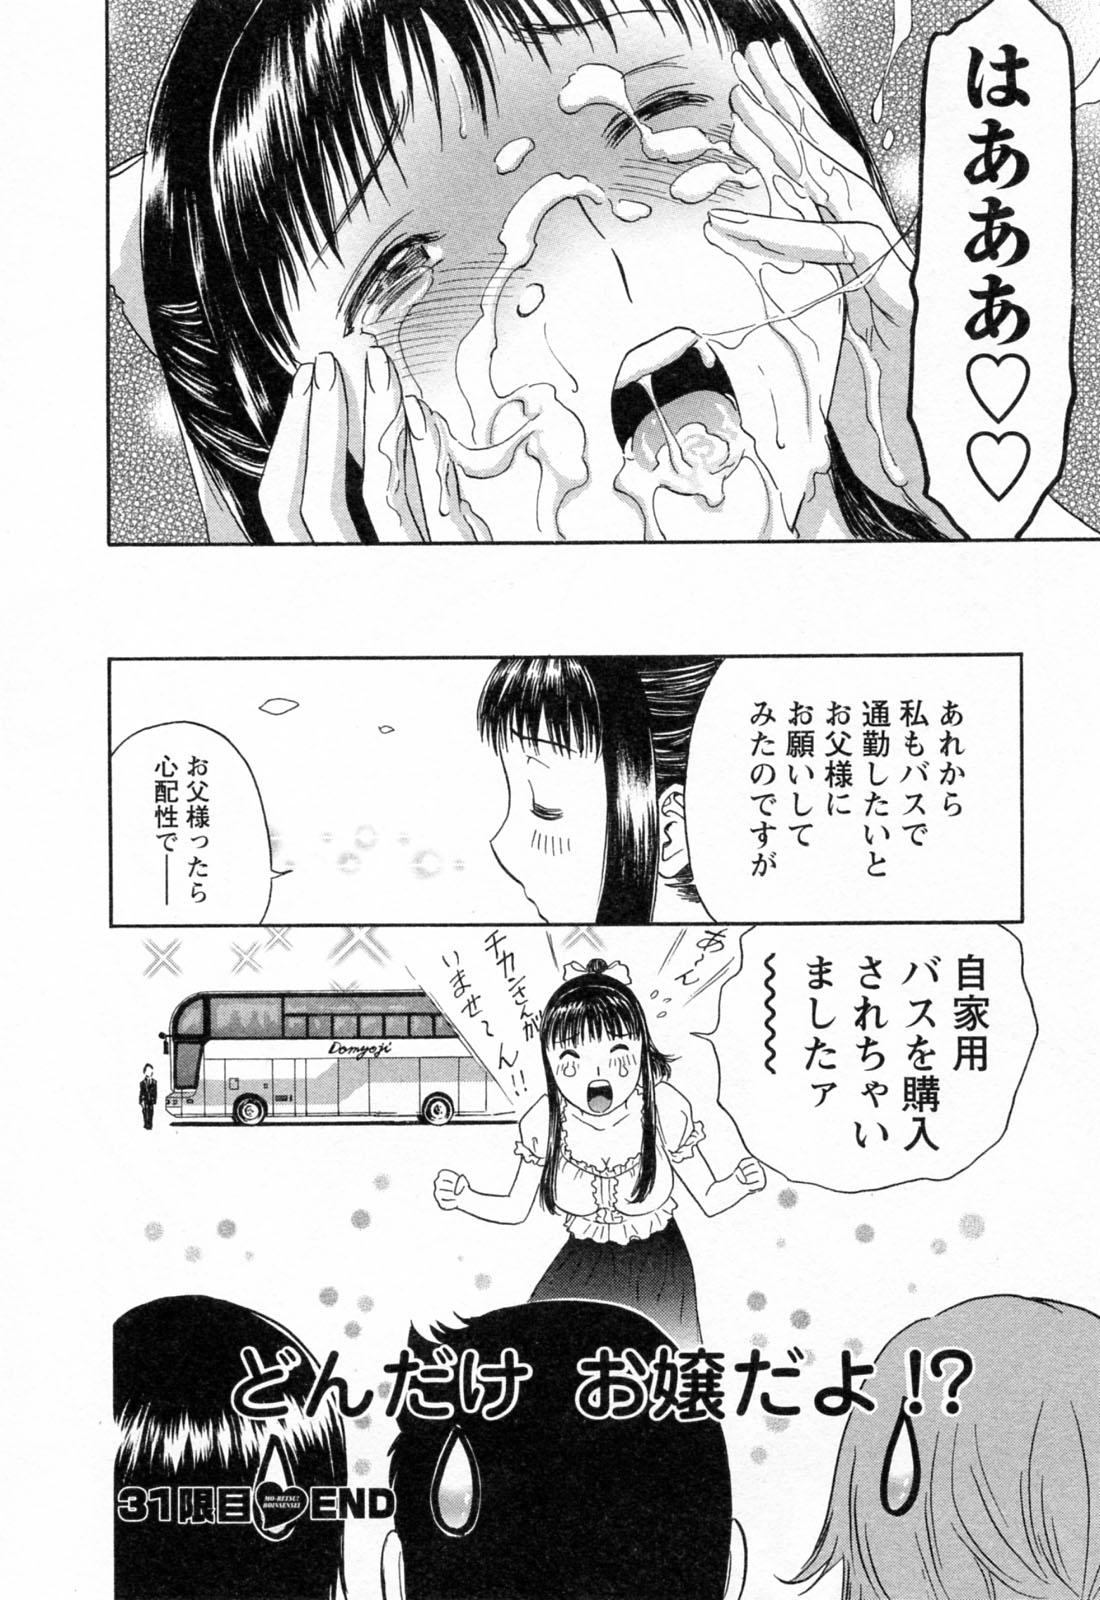 [Hidemaru] Mo-Retsu! Boin Sensei (Boing Boing Teacher) Vol.4 93